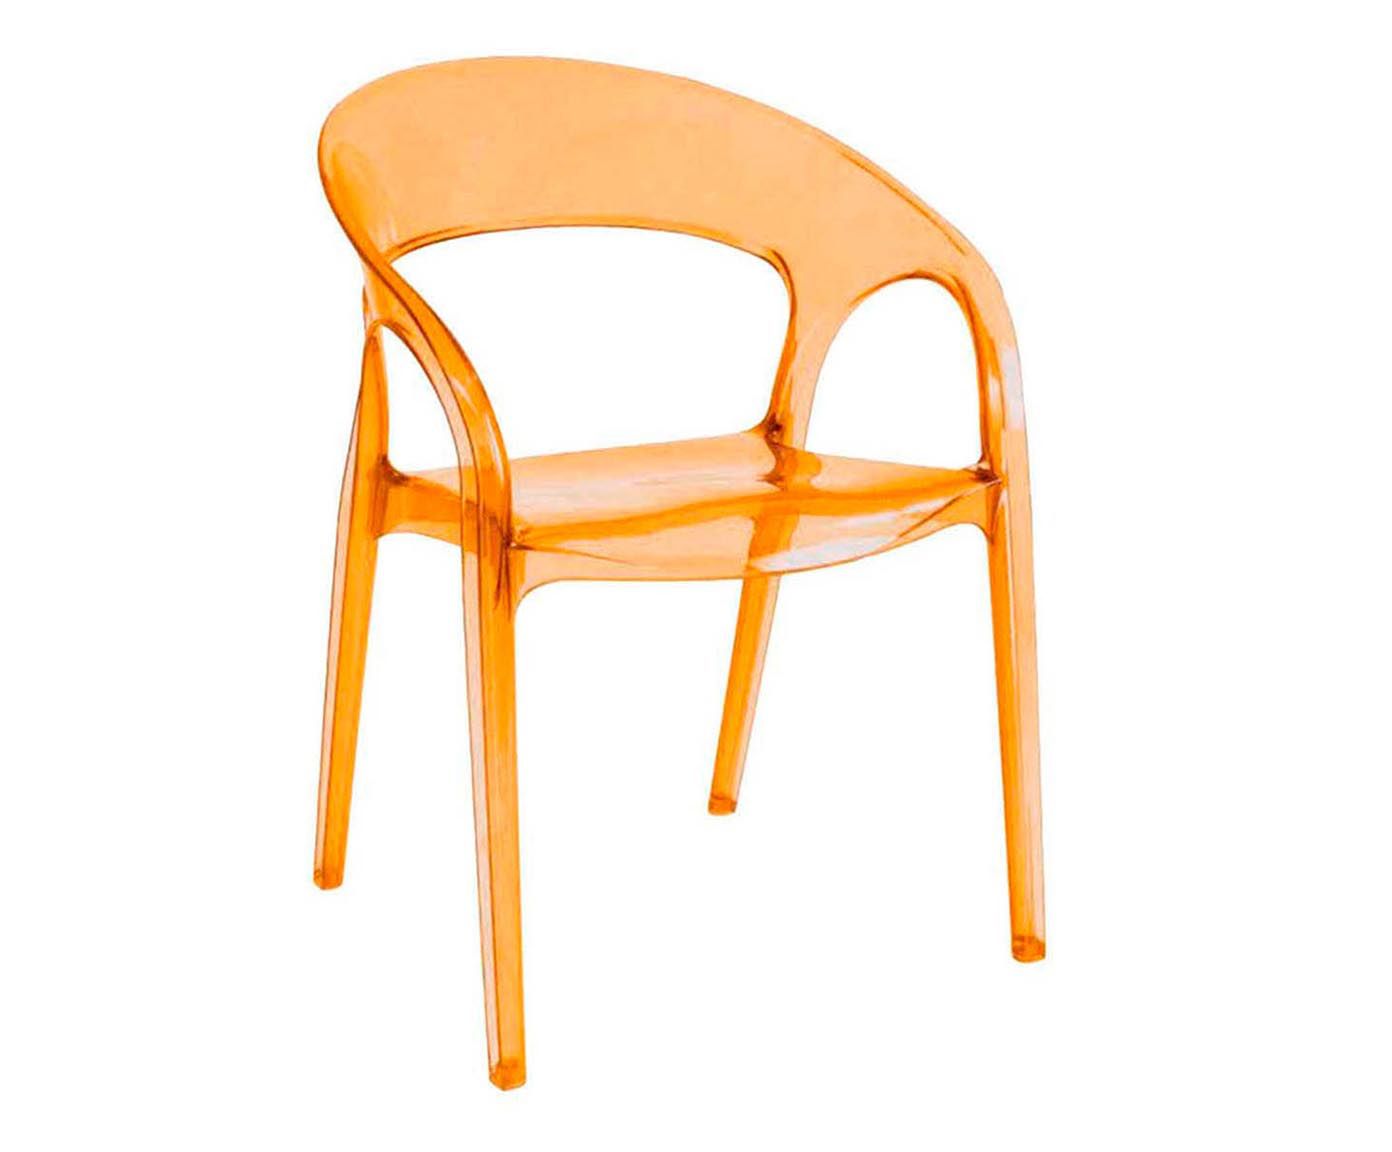 Cadeira formous hendrix - 59x82cm | Westwing.com.br